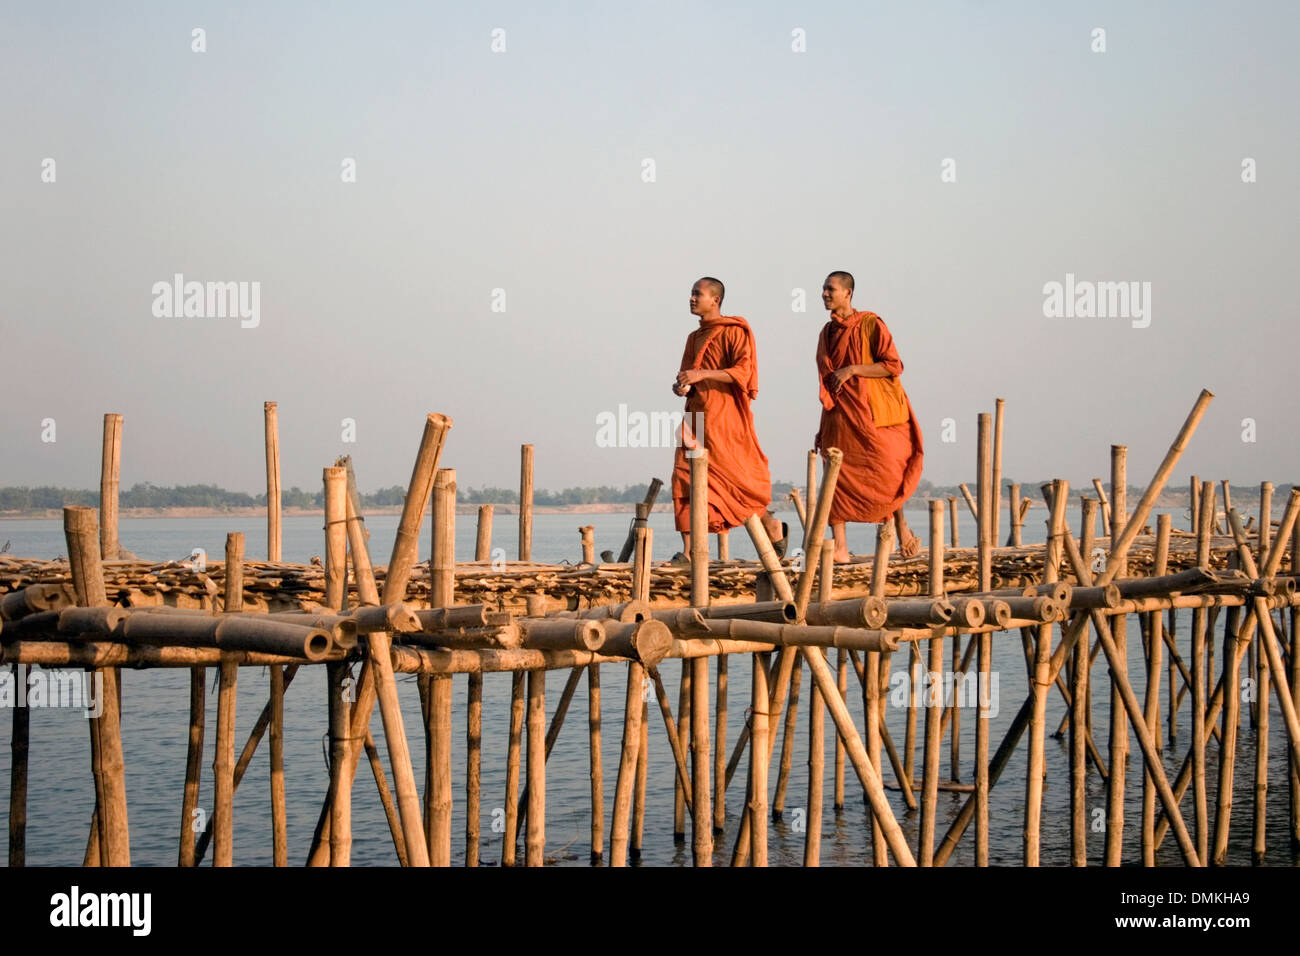 Deux moines bouddhistes portant des robes safran orange marchent sur un pont de bambou sur la rivière du Mékong à Kampong Cham, au Cambodge. Banque D'Images